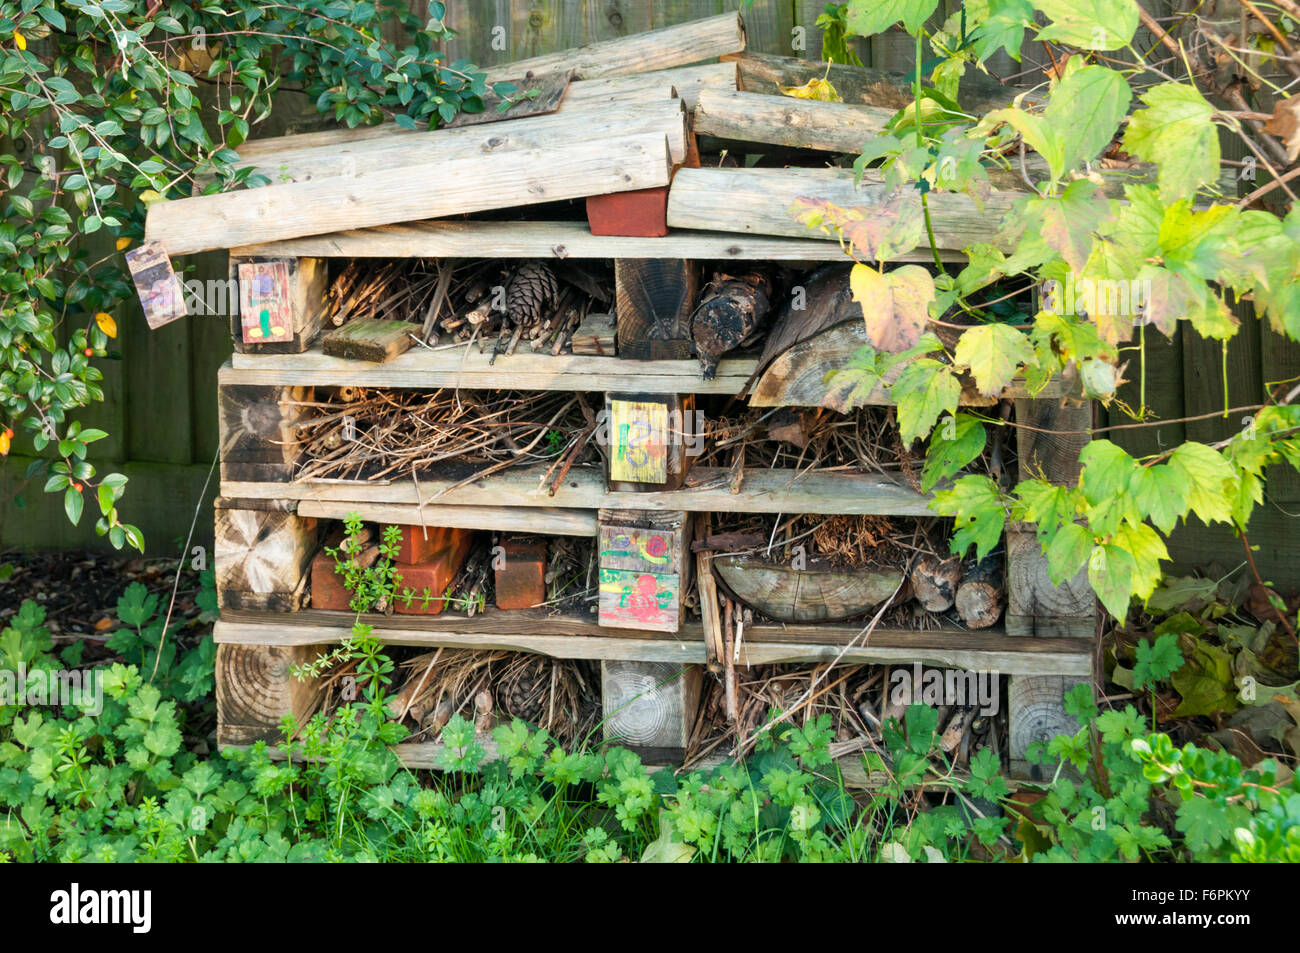 Ein Bug-Hotel für Insekten hergestellt aus alten Holzpaletten in eine wilde Ecke eines Gartens. Stockfoto